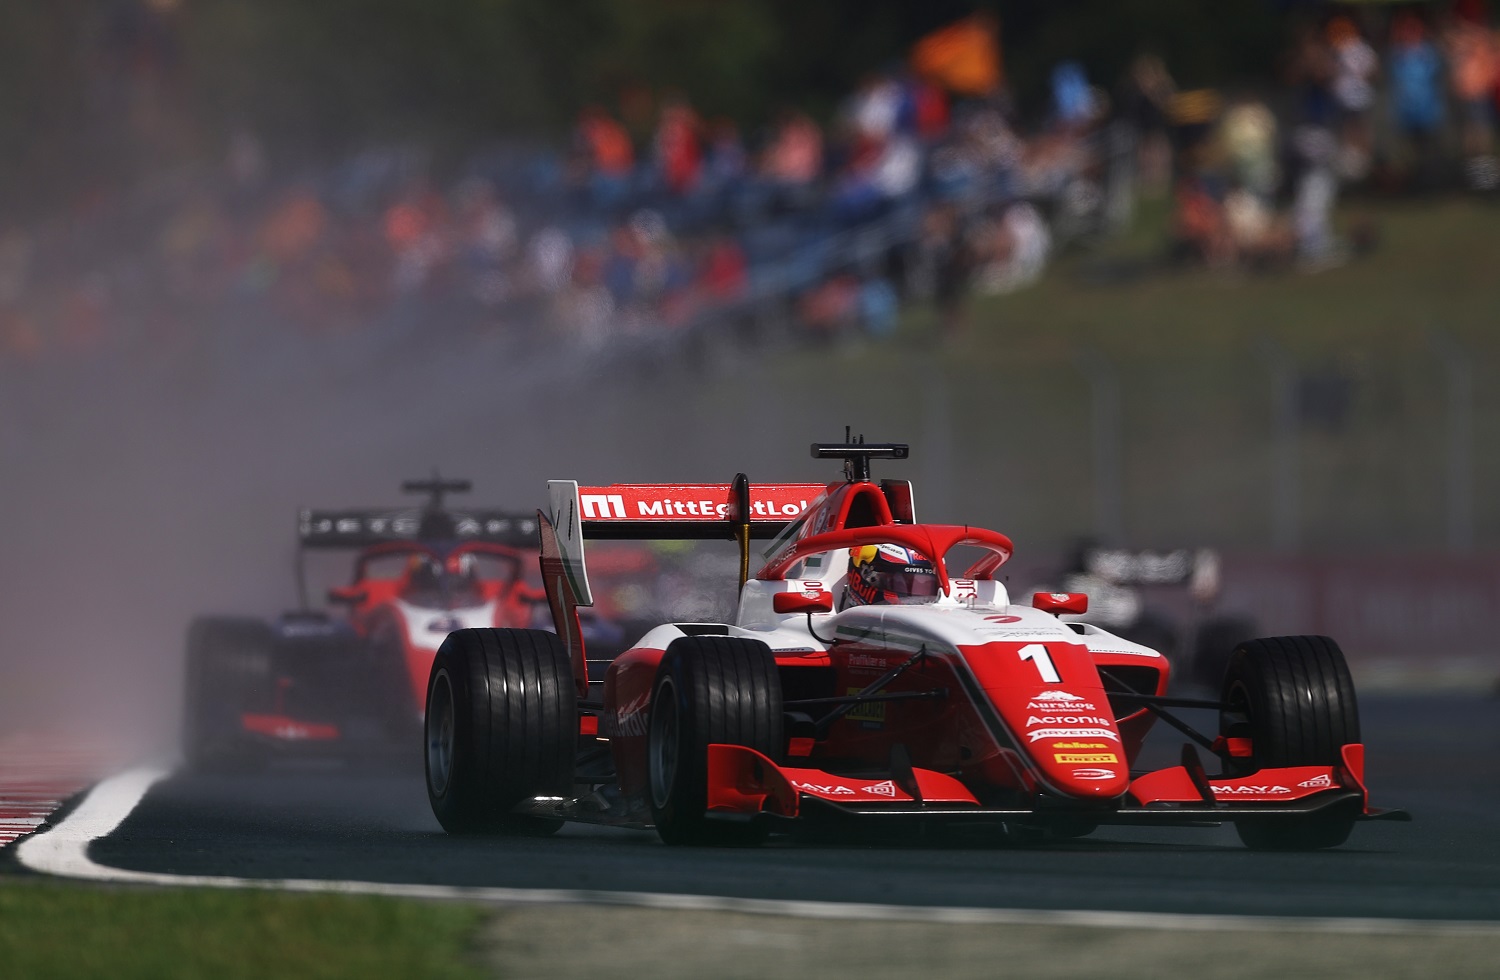 02_dennis_hauger_prema_racing_c_formula_motorsport_limited.JPG